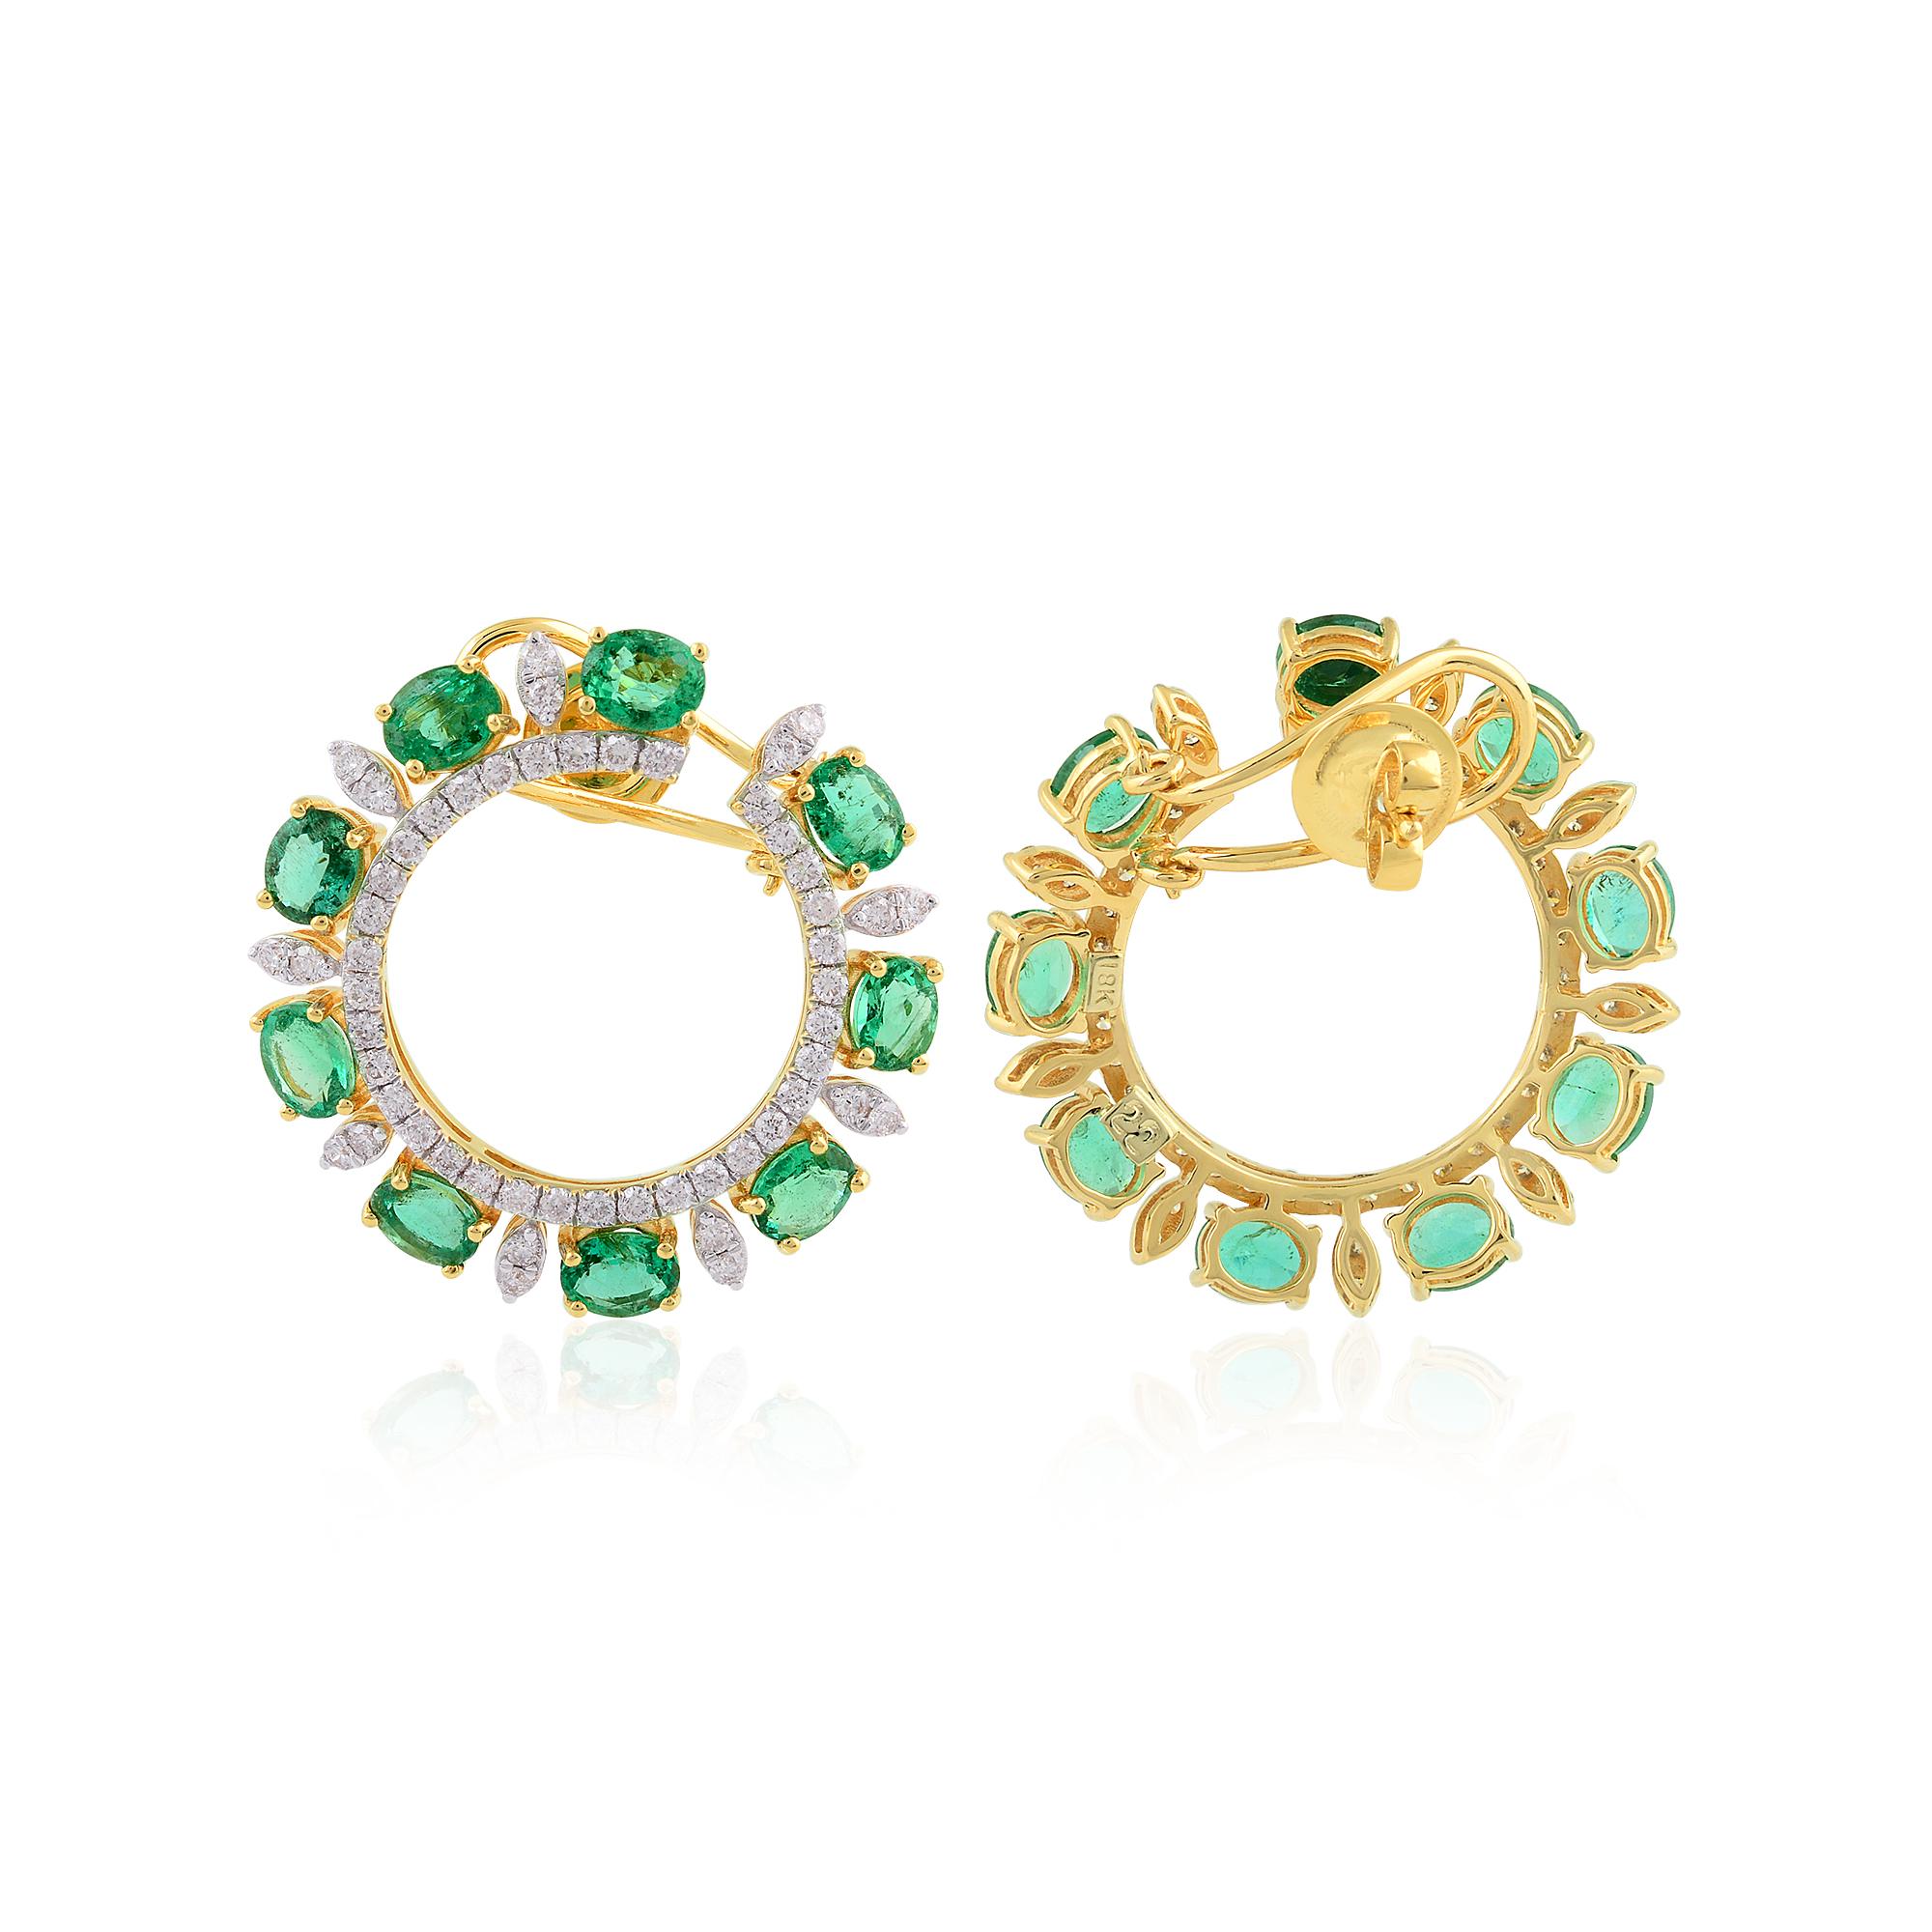 Erhöhen Sie Ihre Eleganz mit diesen atemberaubenden ovalen sambischen Smaragd-Edelstein-Ohrringen mit Hebelverschluss, die mit schillernden Diamanten verziert und in luxuriösem 14 Karat Gelbgold gefertigt sind.

Artikel-Code :- SEE-1395C